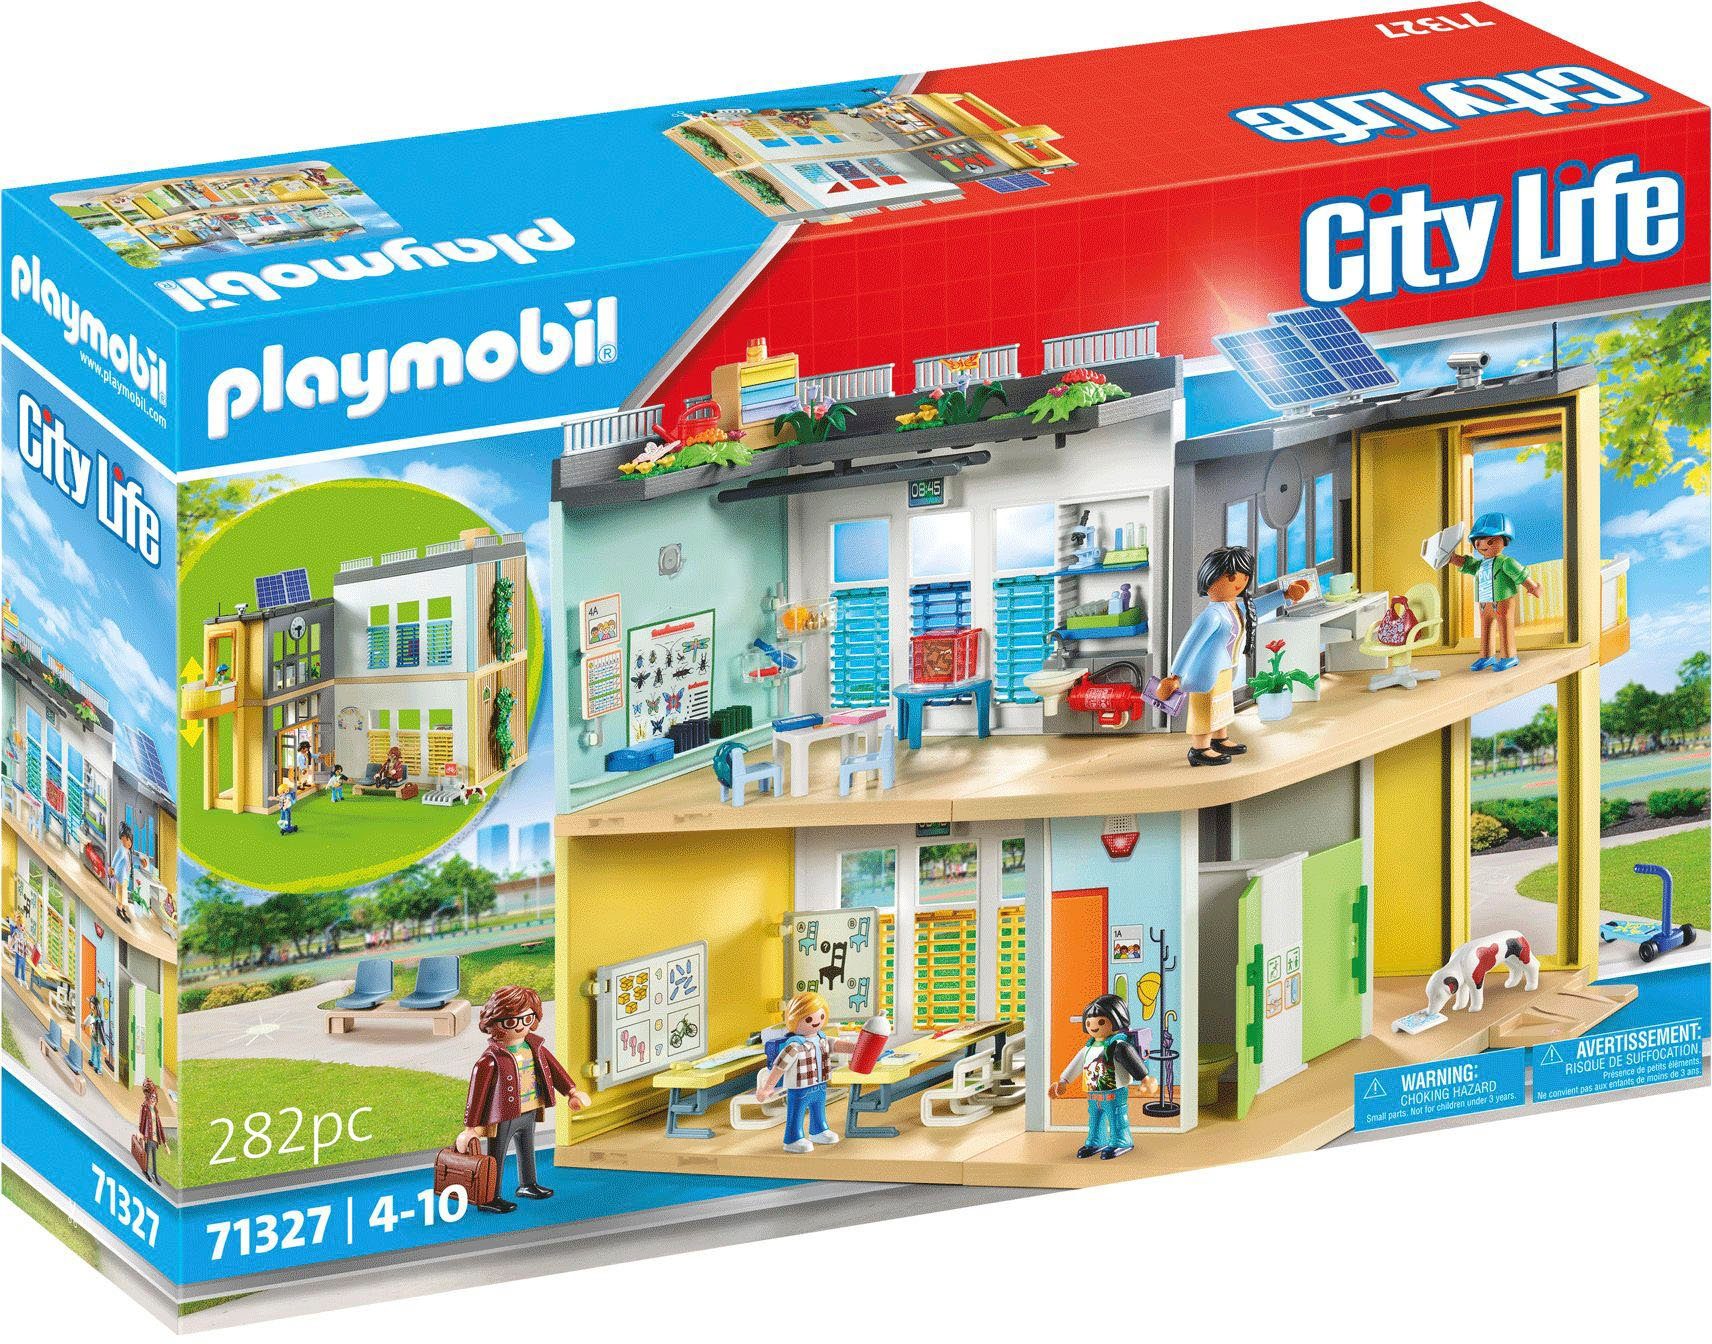 Playmobil® Konstruktions-Spielset Große Schule (71327), City Life, (282  St), Made in Germany, Mit beweglicher, interaktiver Tafel und bemalbaren  Arbeitsblättern